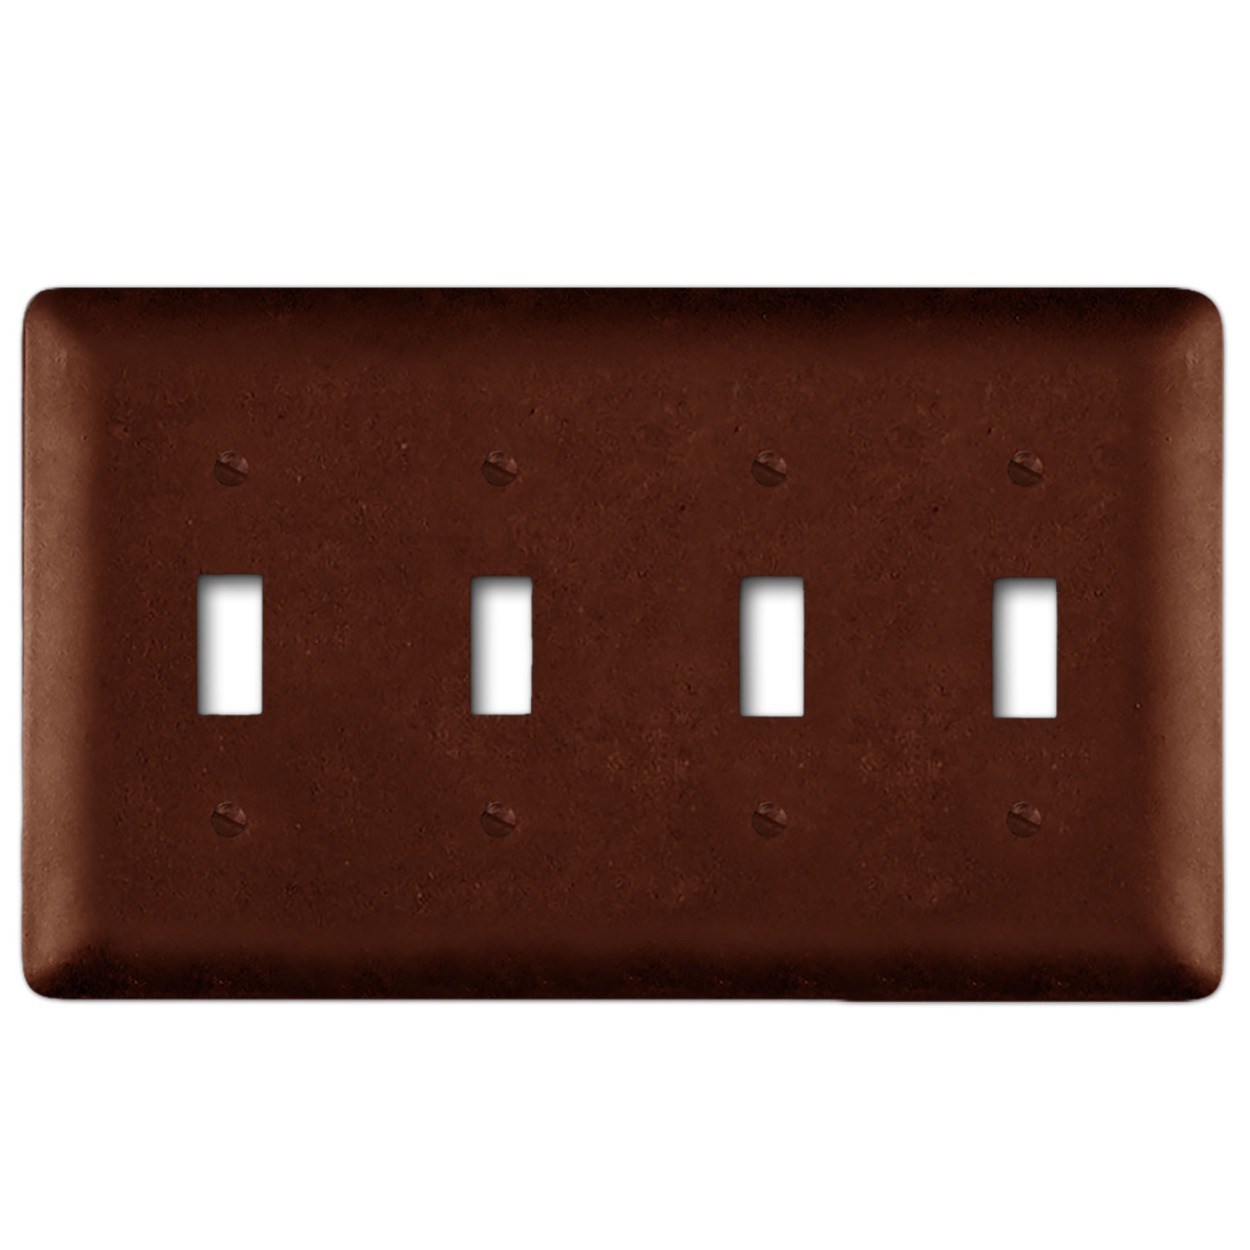 Rust Brown Metal Wall Plate - Plain - Standard Switch - Quad - cdi